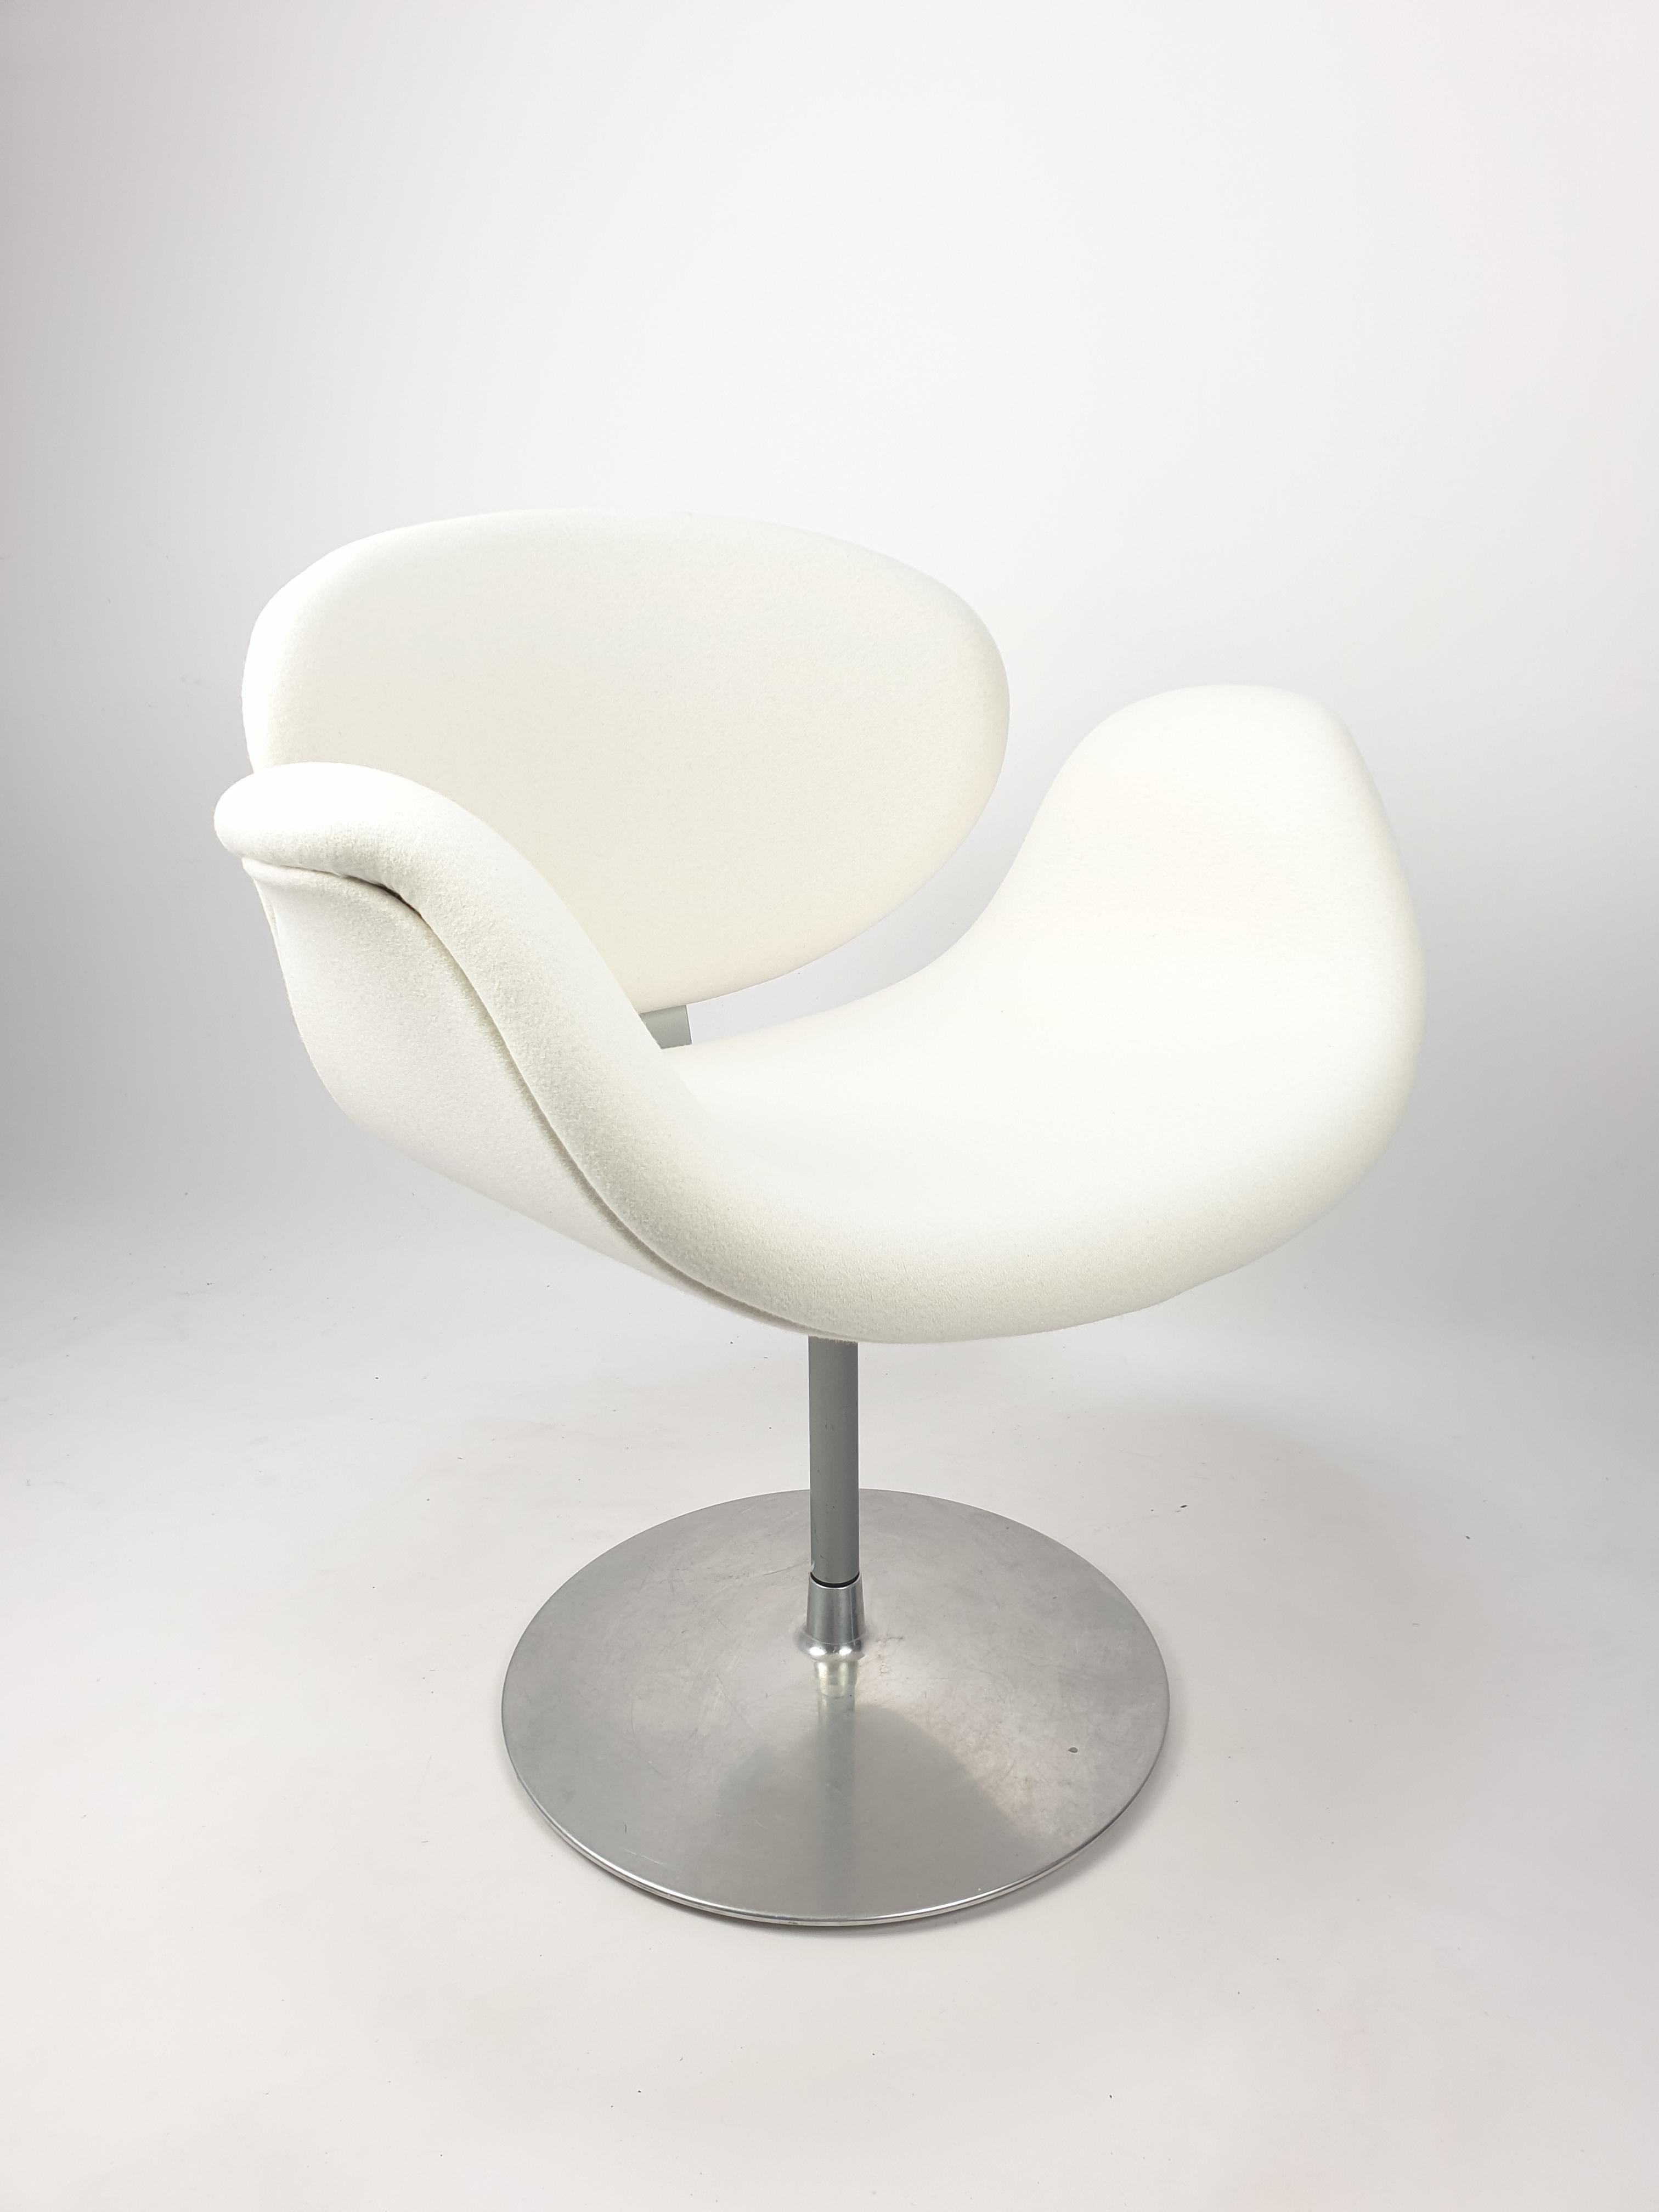 Hübscher und sehr bequemer drehbarer Sessel, entworfen von dem berühmten Pierre Paulin in den 60er Jahren. Hergestellt von Artifort in den 80er Jahren. Rundes Metallgestell mit Holzrahmen, gepolstert mit dem schönen und sehr weichen Wollstoff Pierre